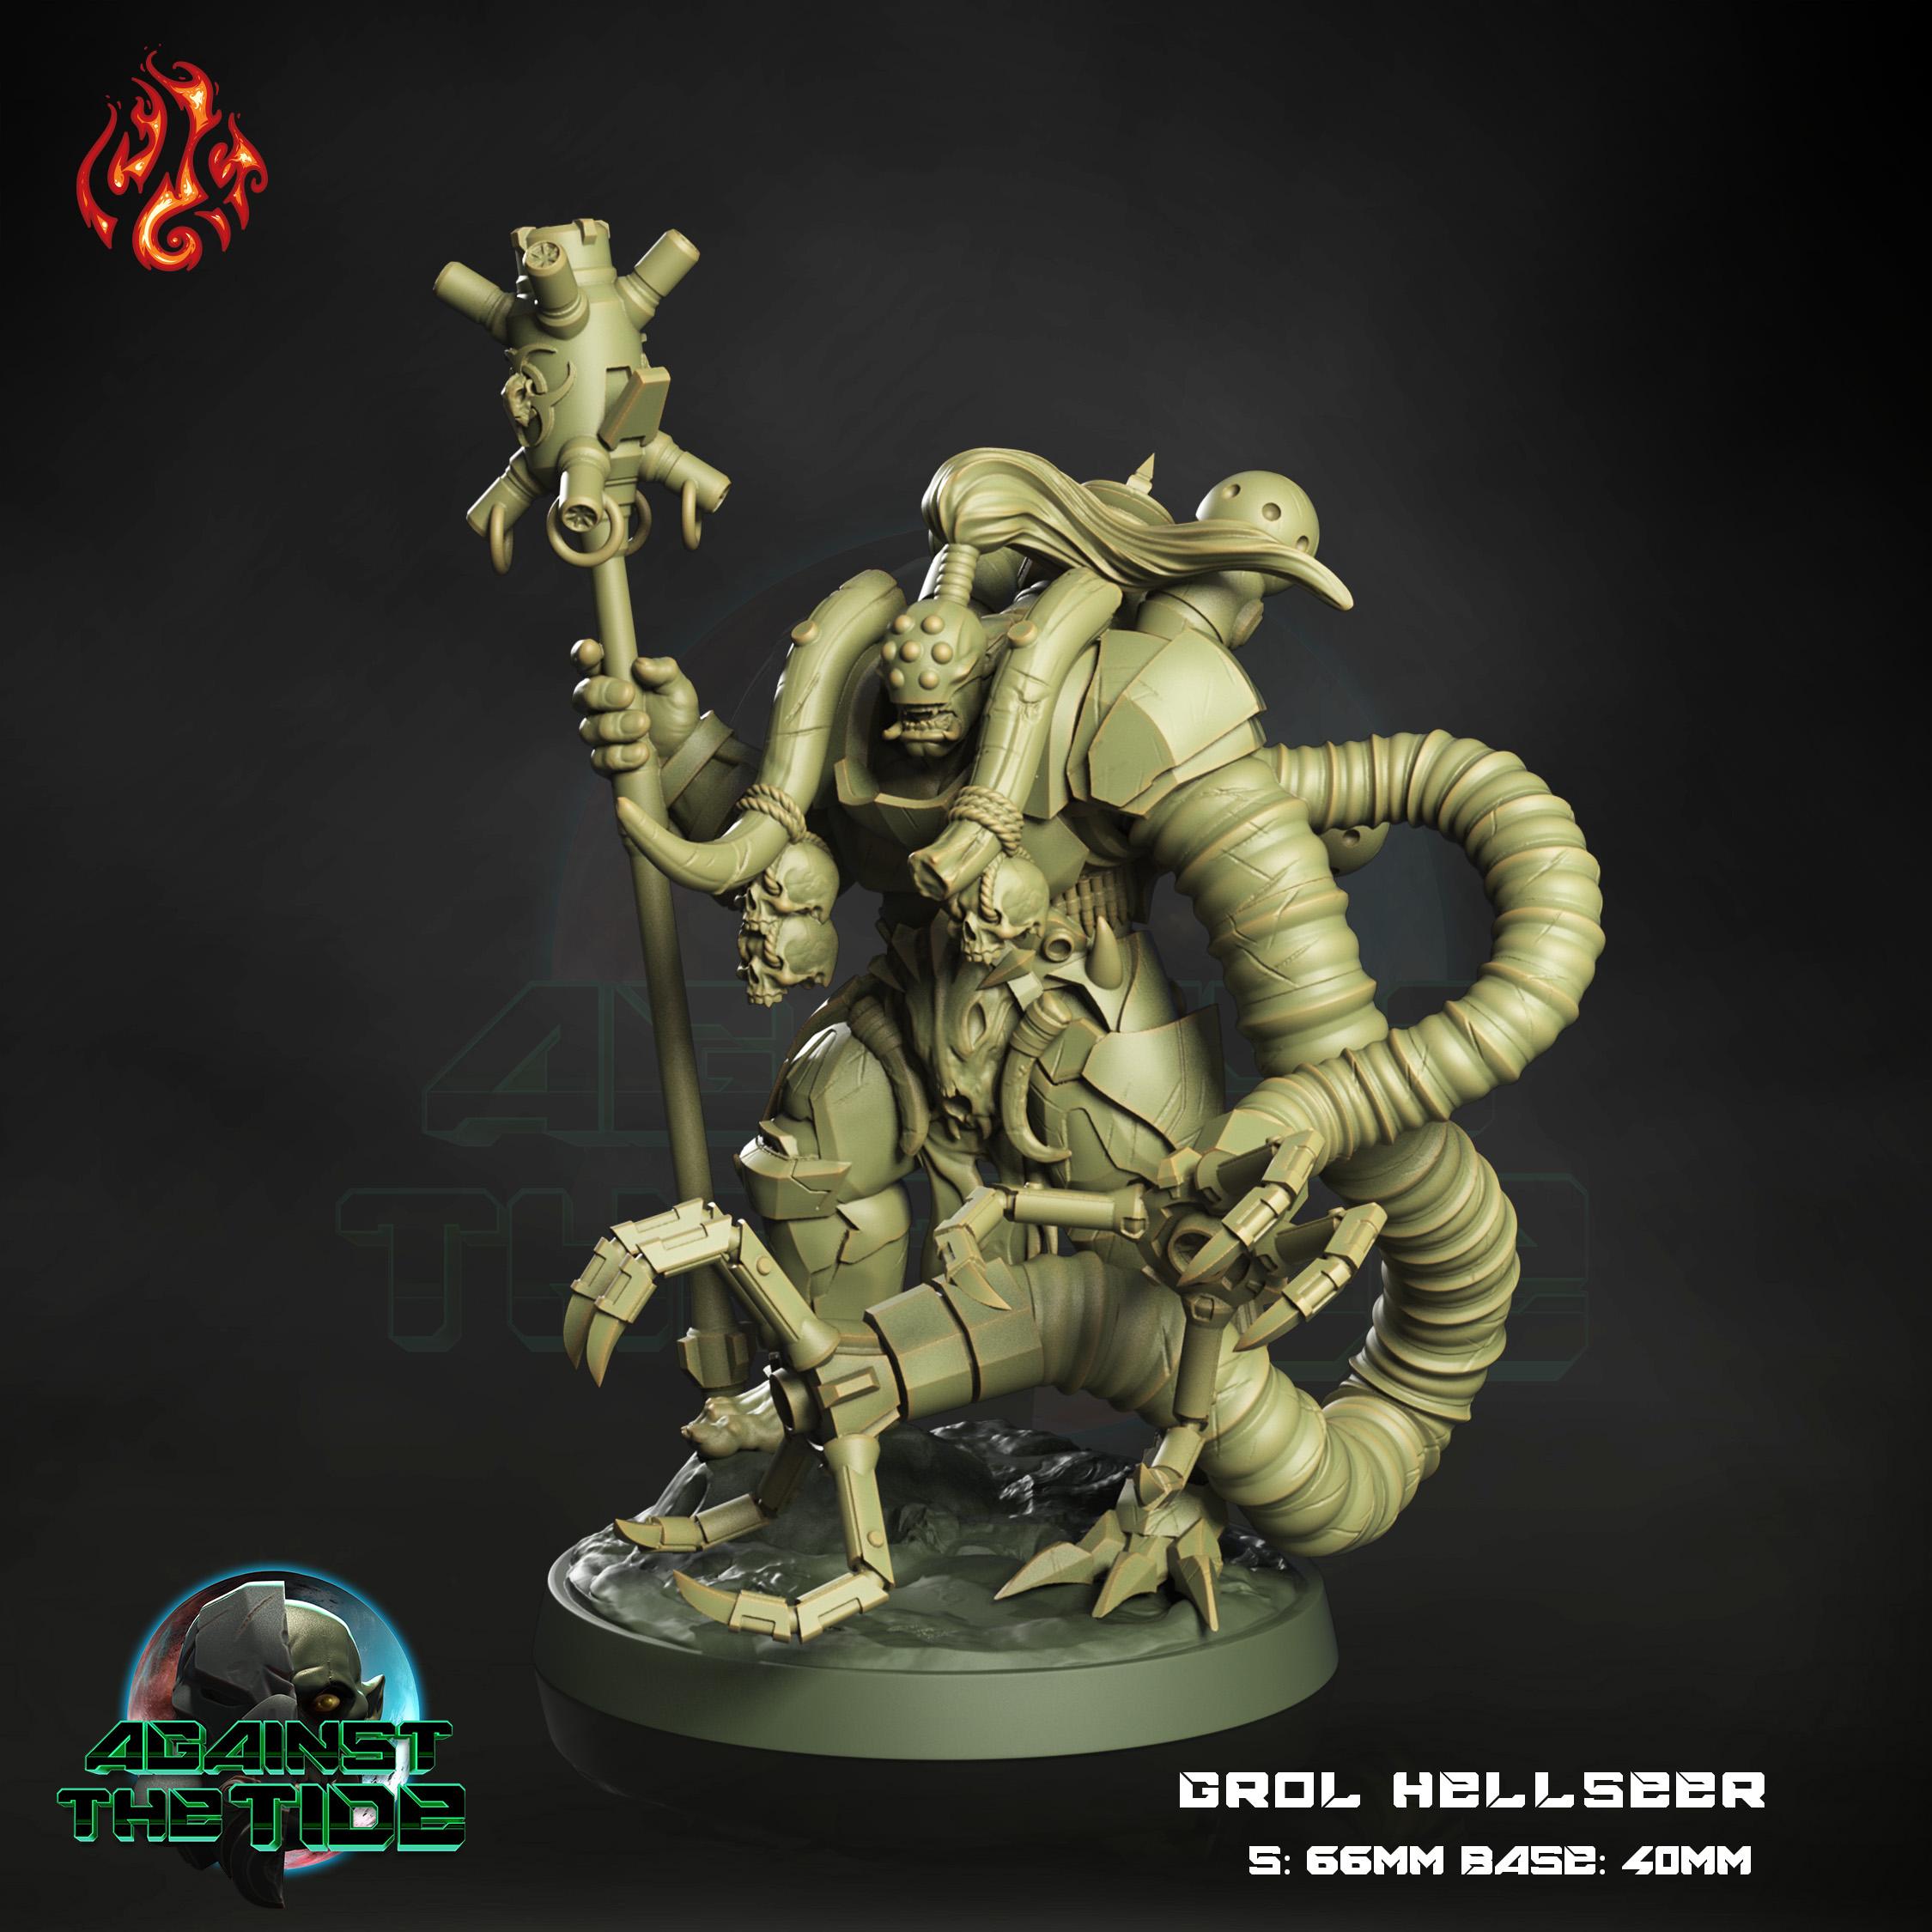 Grol Hellseer 3d model